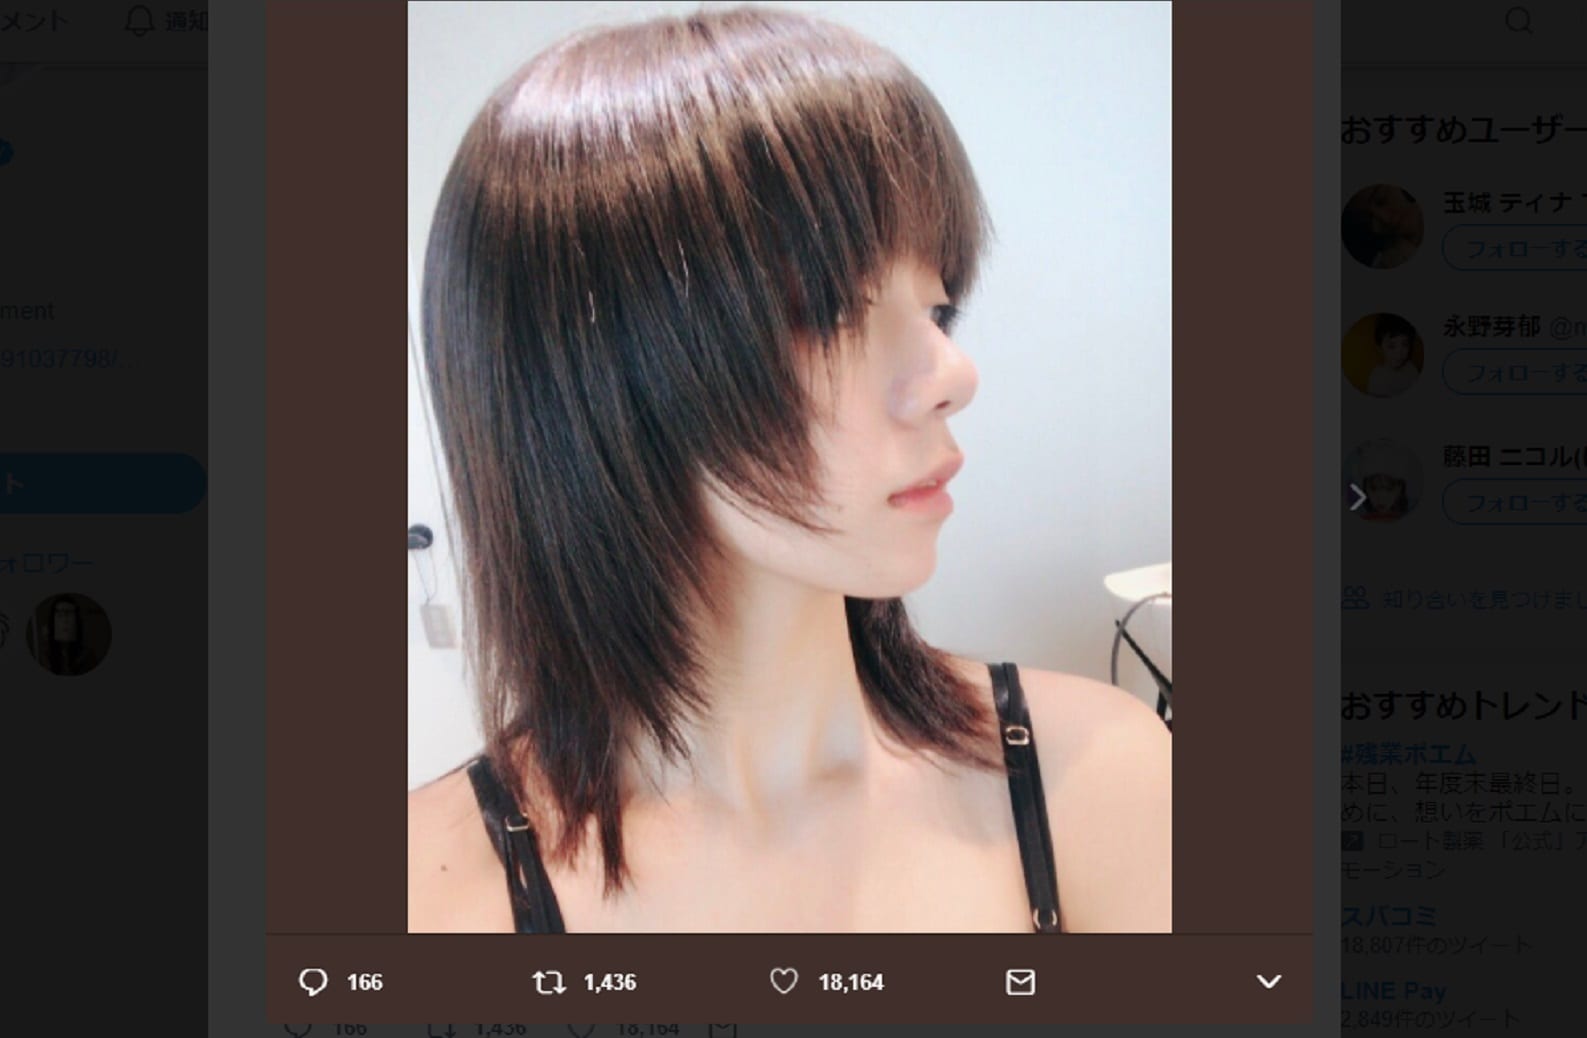 胸鎖乳突筋 がすごい 池田エライザの新しい髪形と美しい上半身にファン注目 Sirabee